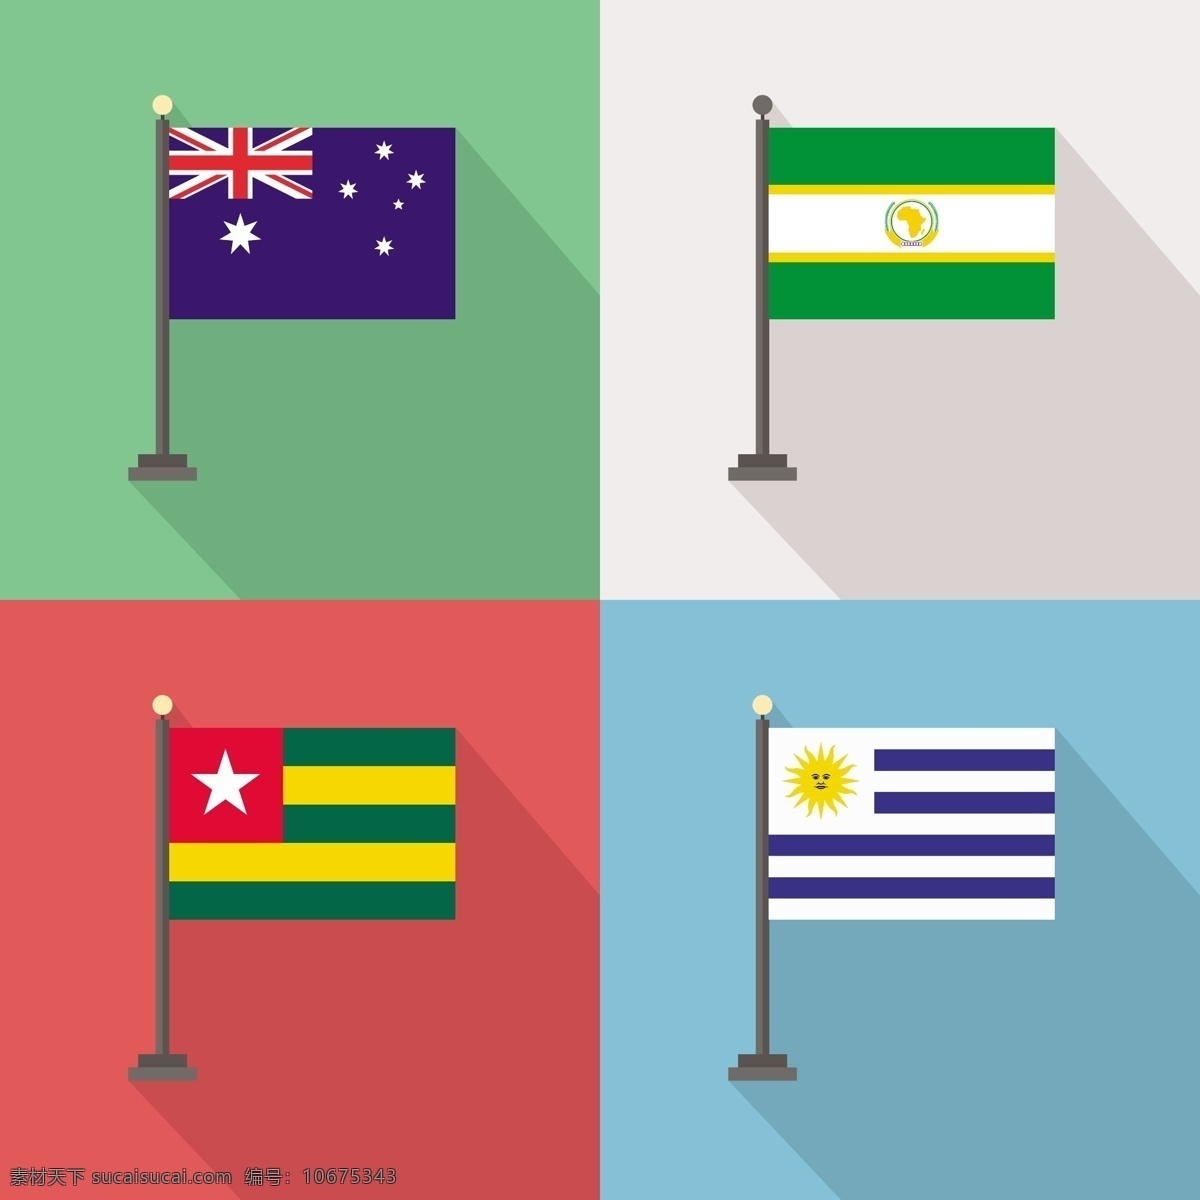 澳大利亚 非洲联盟 多哥 乌拉圭 国旗 世界 旗帜 国家 非洲 国际 联盟 爱国 民族 爱国主义 白色